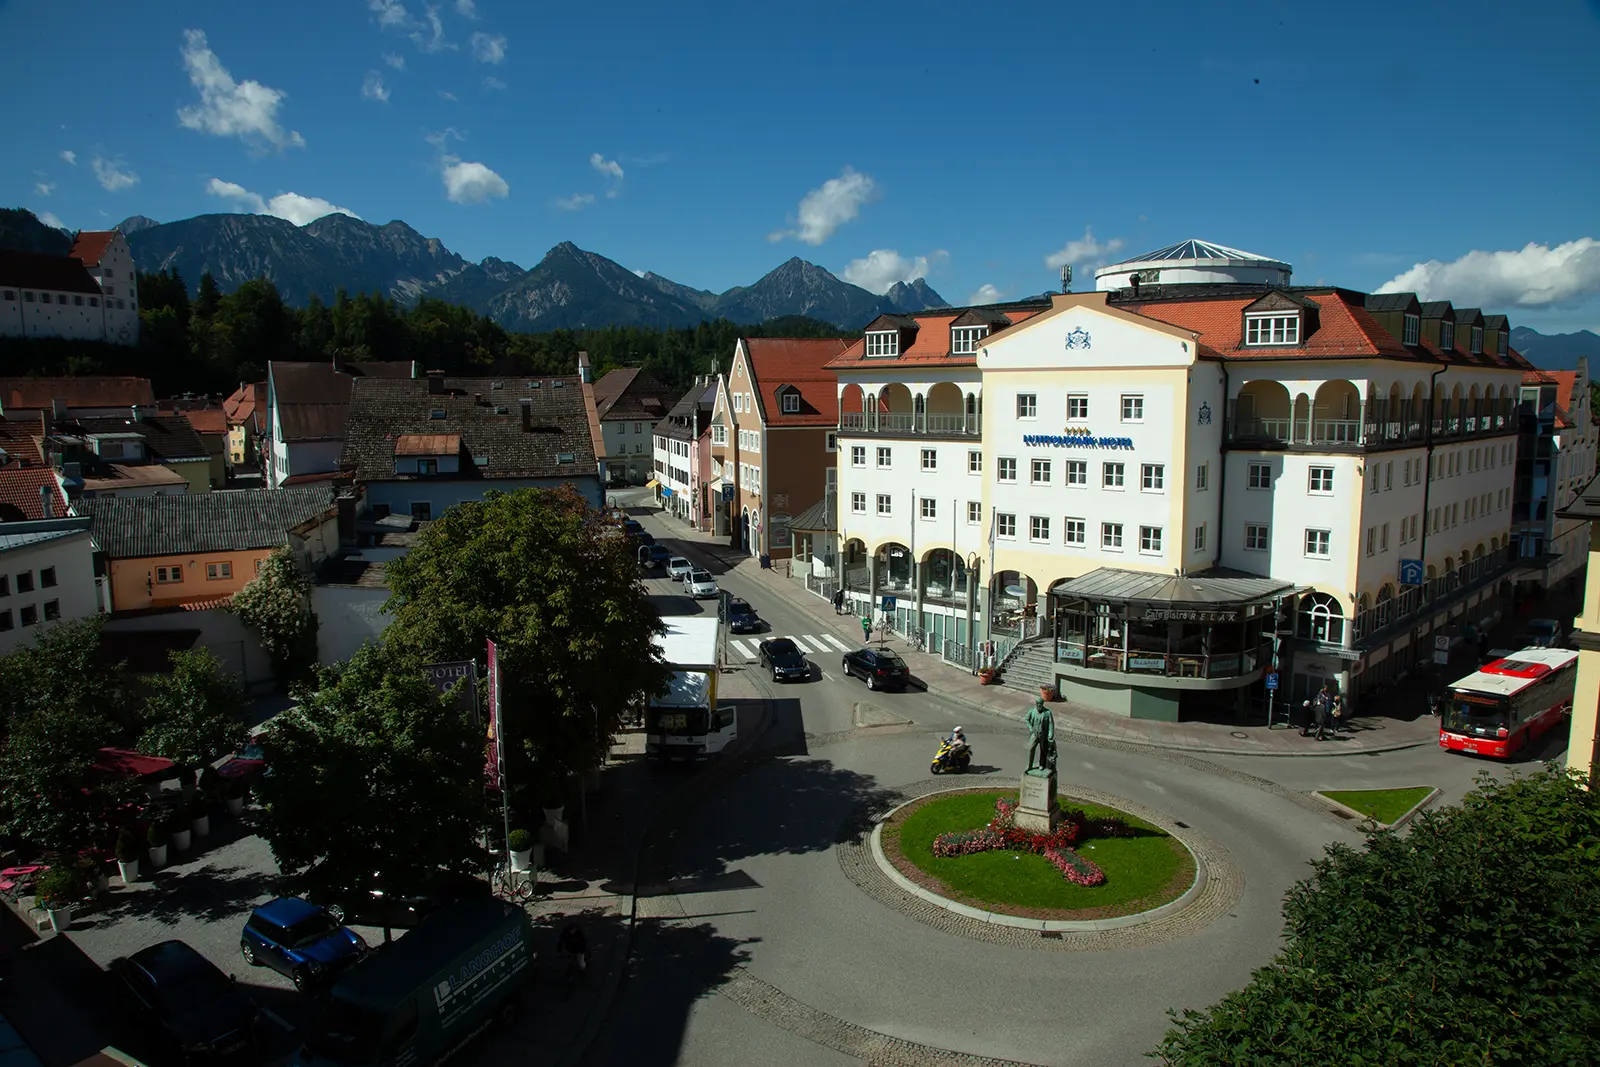 Hotel Luitpoldpark in Füssen unbearbeitet